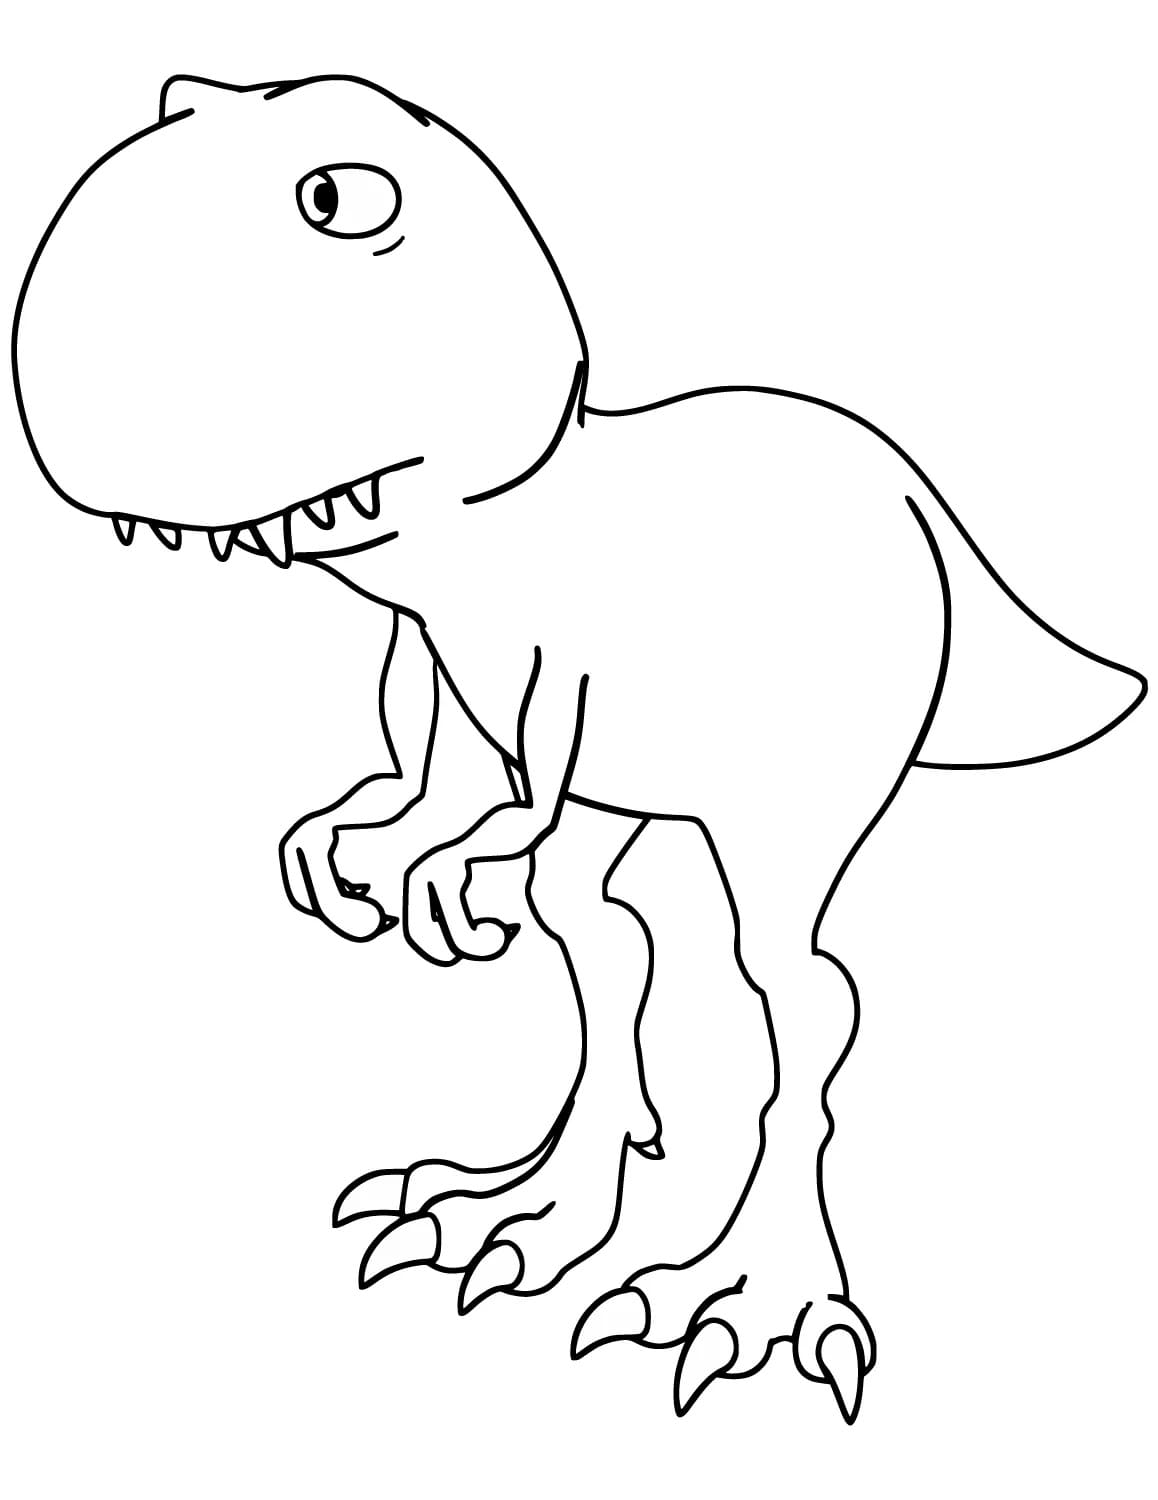 Para Colorear T-rex Dinosaurio T-Rex para niños de 4-5 años